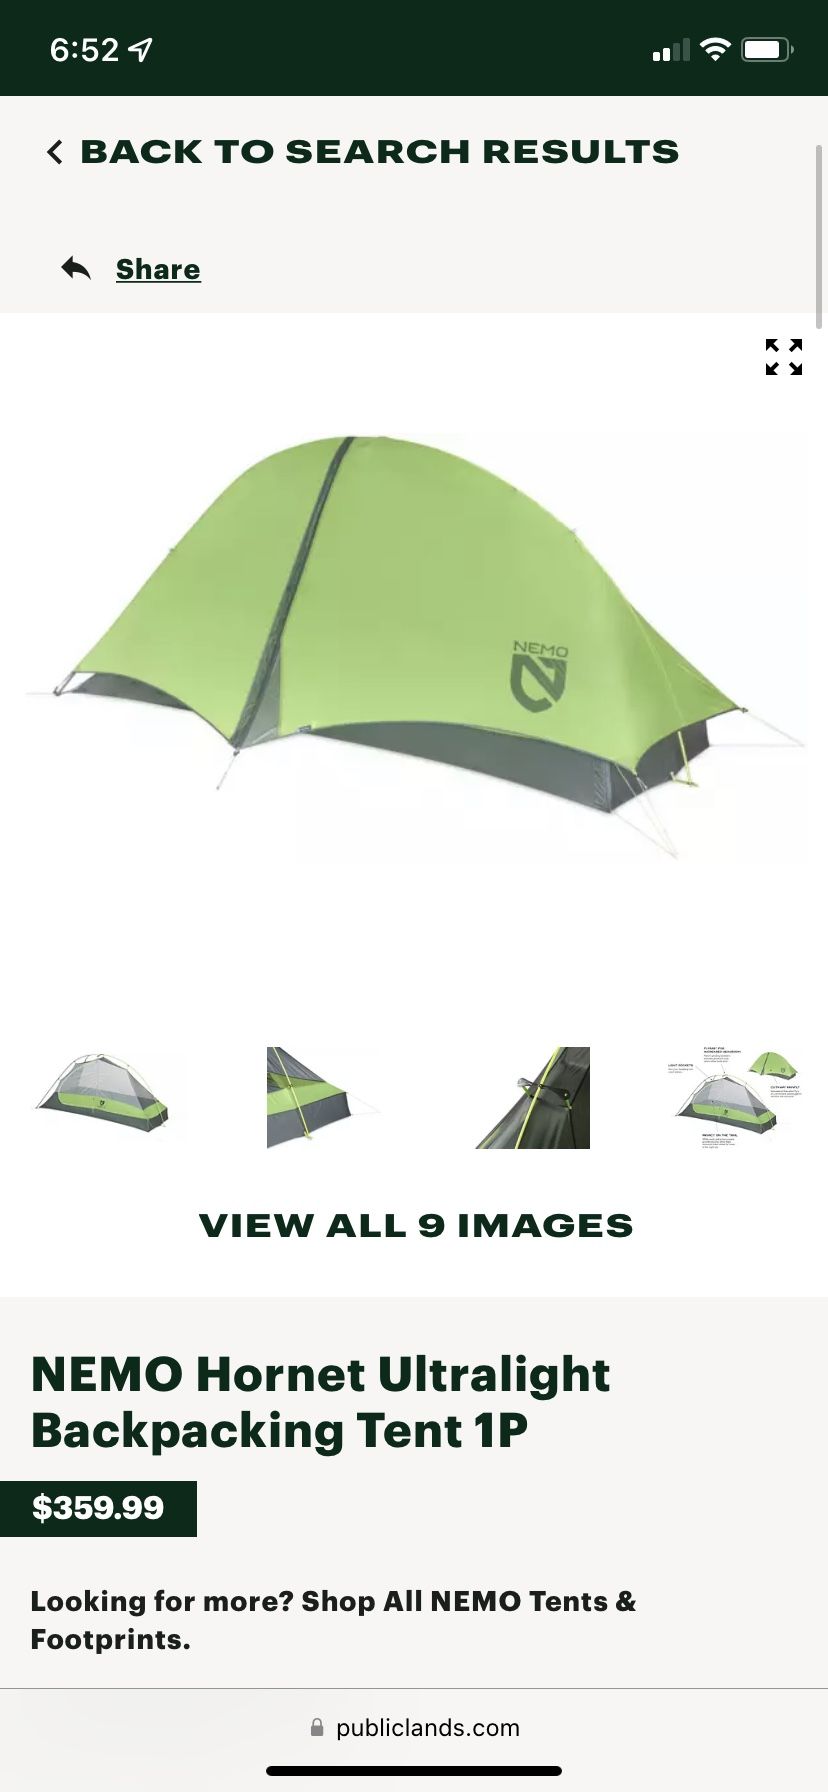 NEMO Hornet Ultralight Backpacking Tent 1P